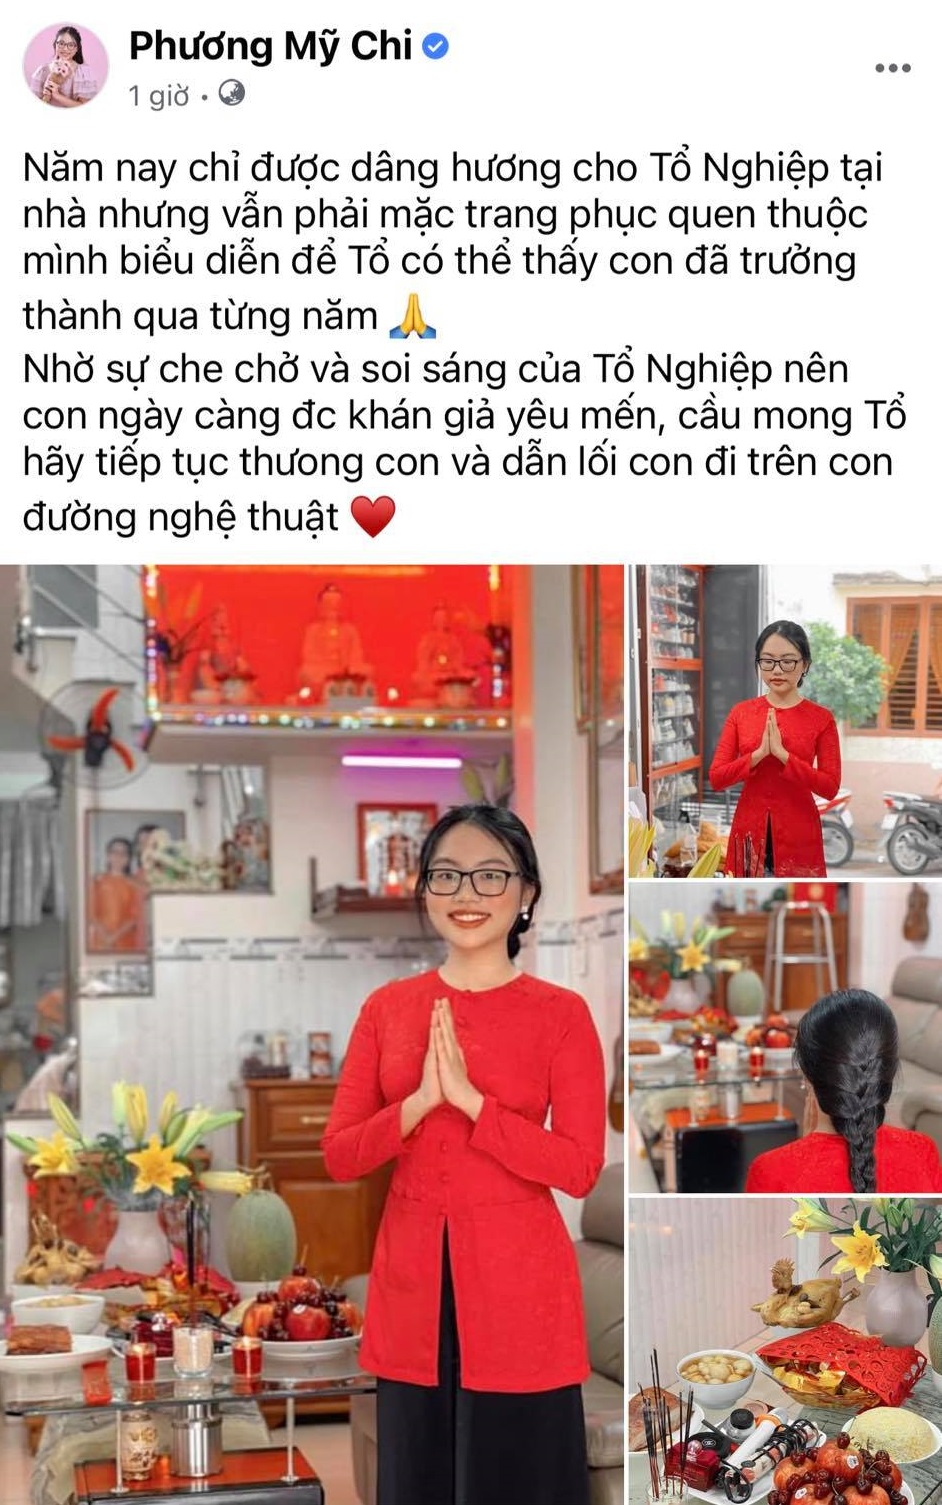 Nghệ sĩ Việt trong ngày giỗ Tổ nghề: Người làm lễ ở một nơi xa vì dịch bệnh, người làm đơn giản tại nhà